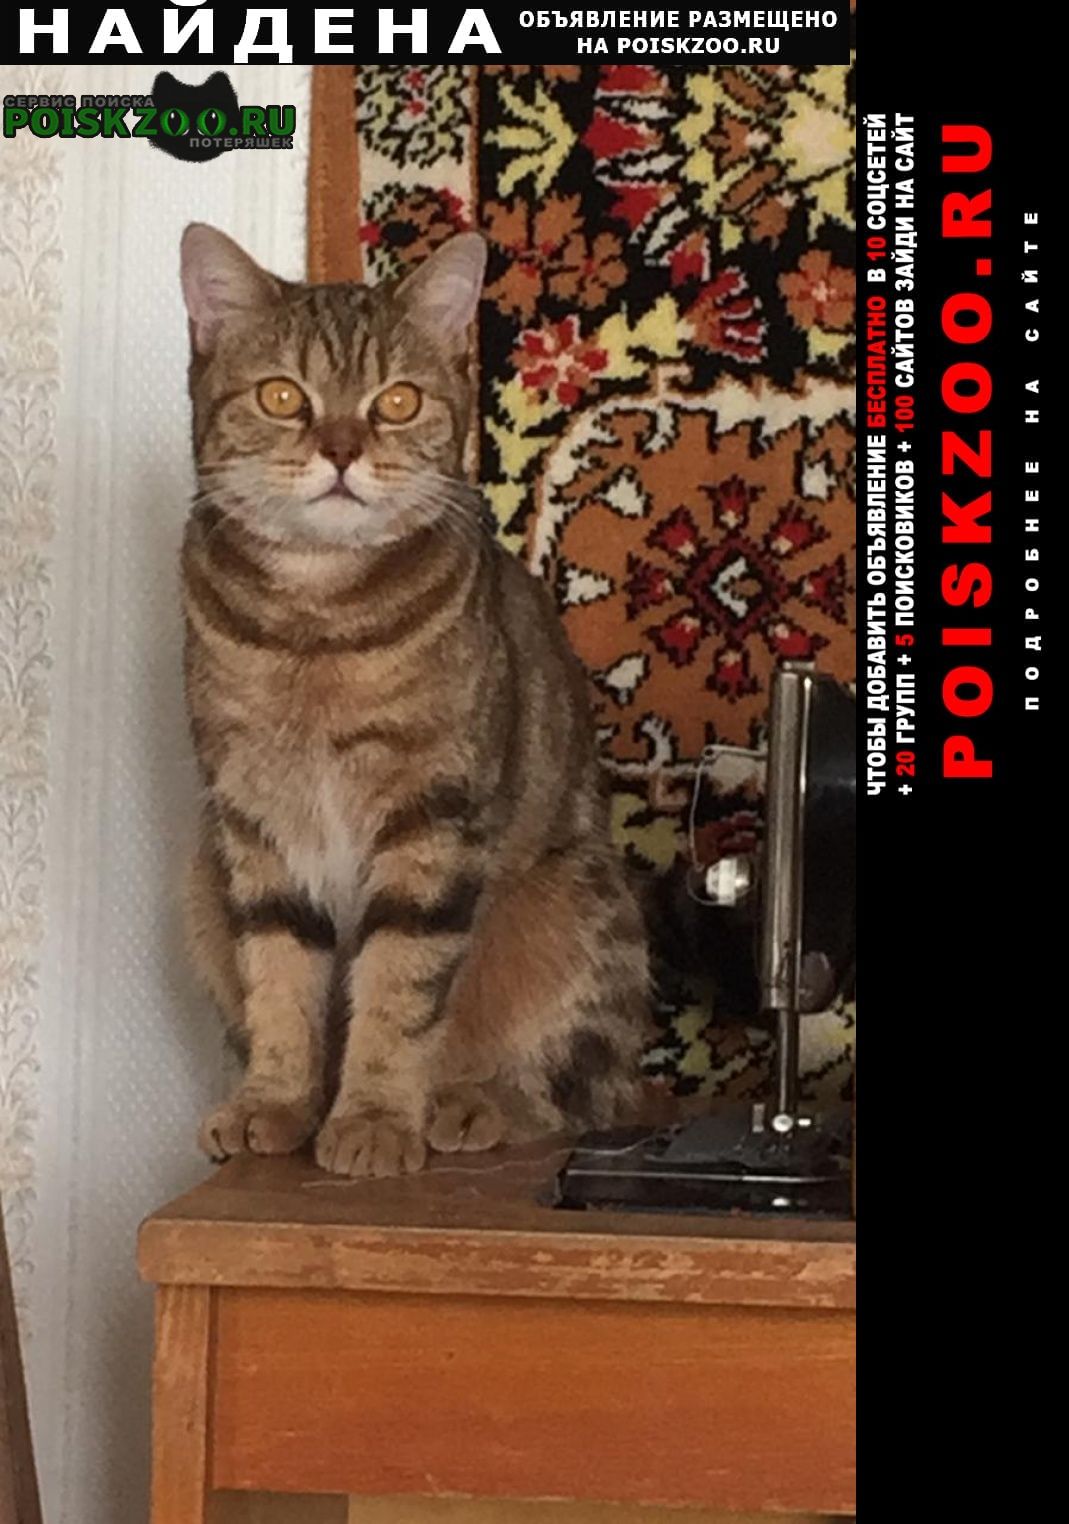 Новосибирск Найдена кошка молодая